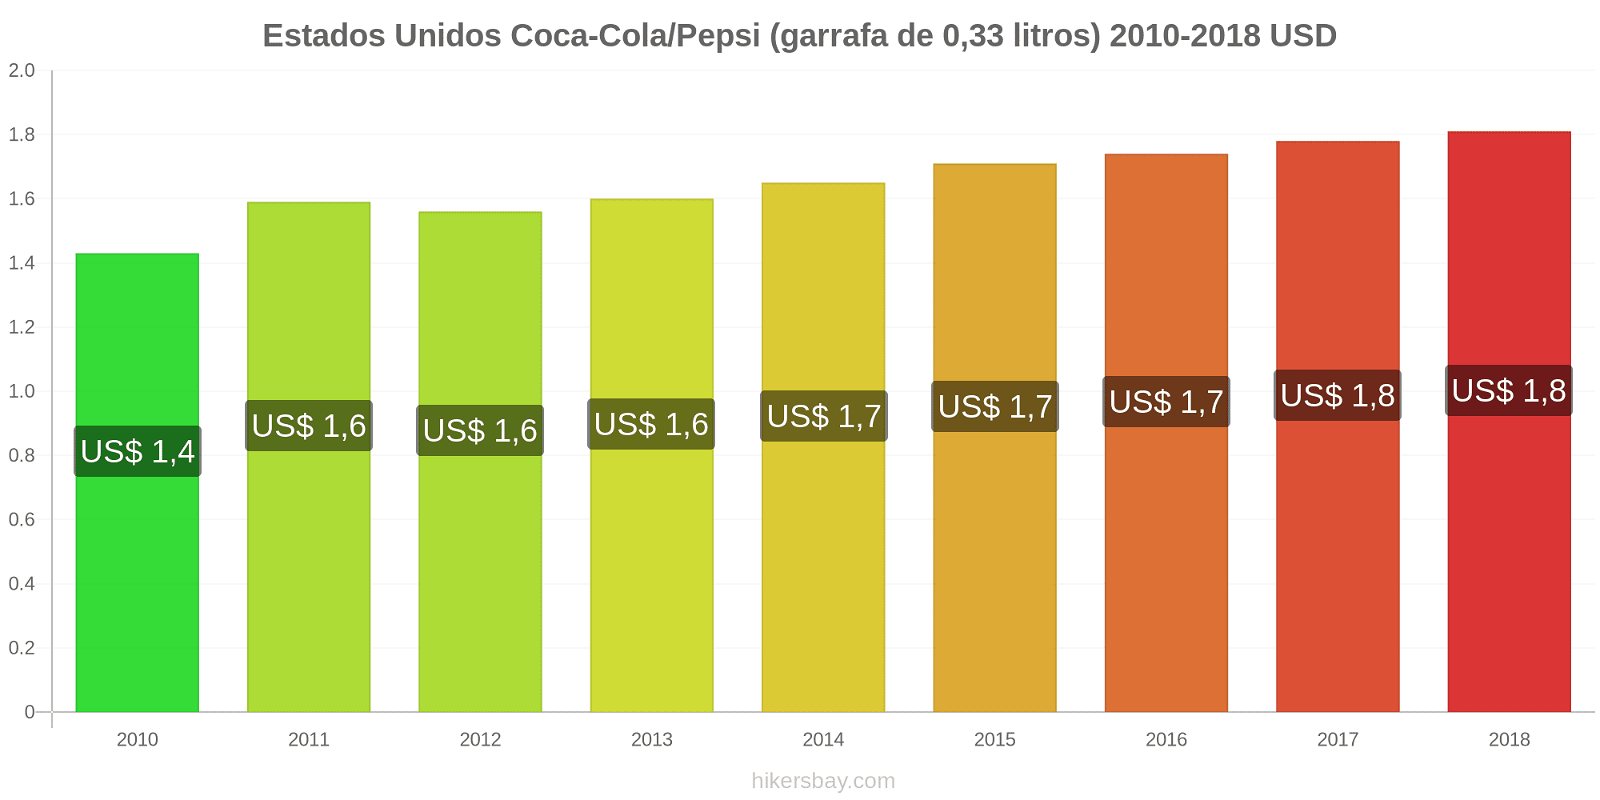 Estados Unidos mudanças de preços Coca-Cola/Pepsi (garrafa de 0.33 litros) hikersbay.com